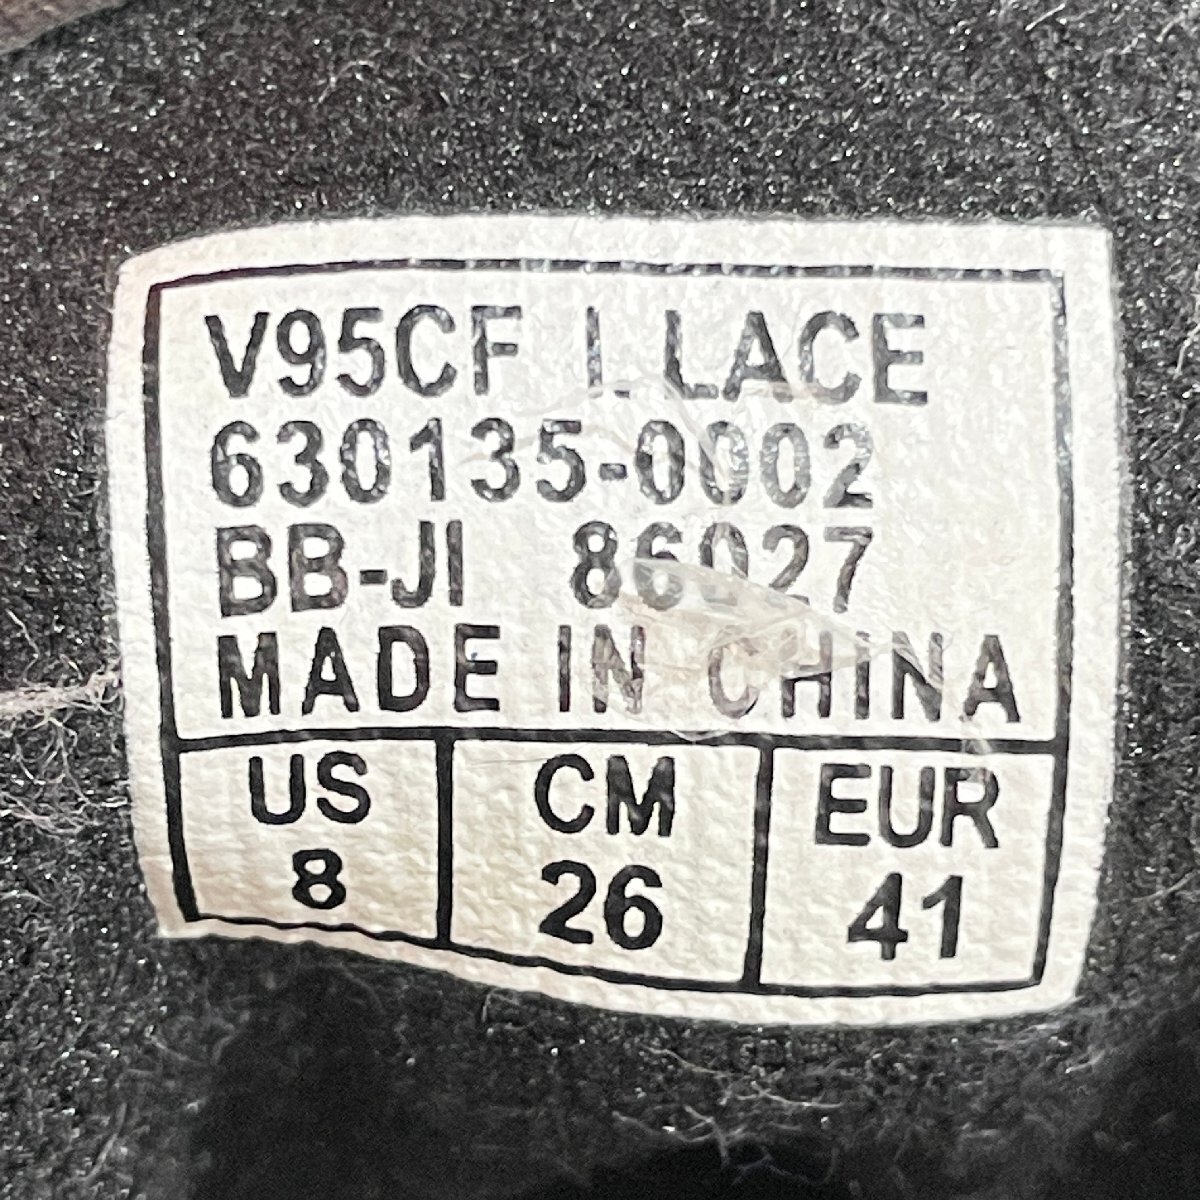 26cm VANS V95 CF I LACE 630135-0002 バンズ エラ インターレース ブラック メンズ スニーカー CI H107997_画像7